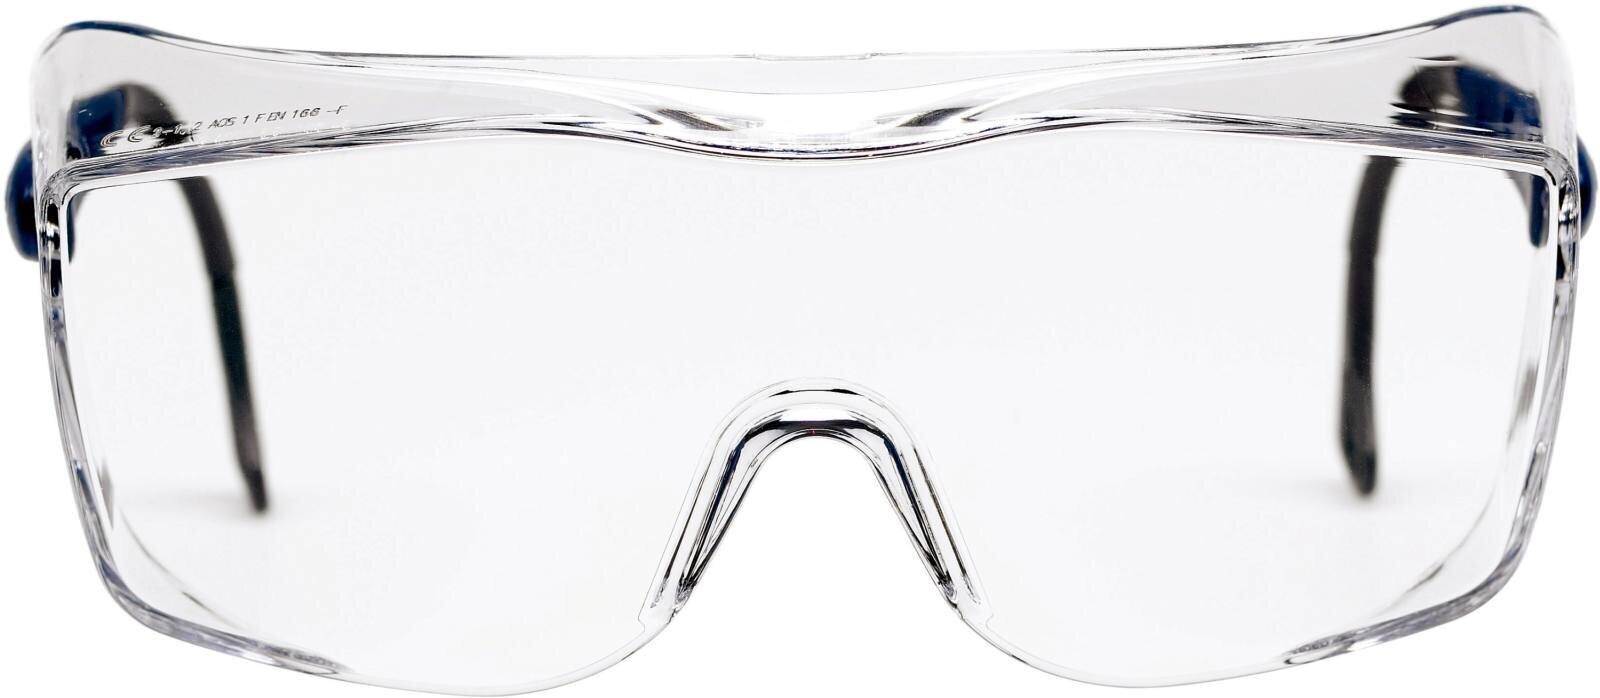 3M Gafas OX2000, revestimiento antirrayas/antivaho, lente transparente, 17-5118-2040